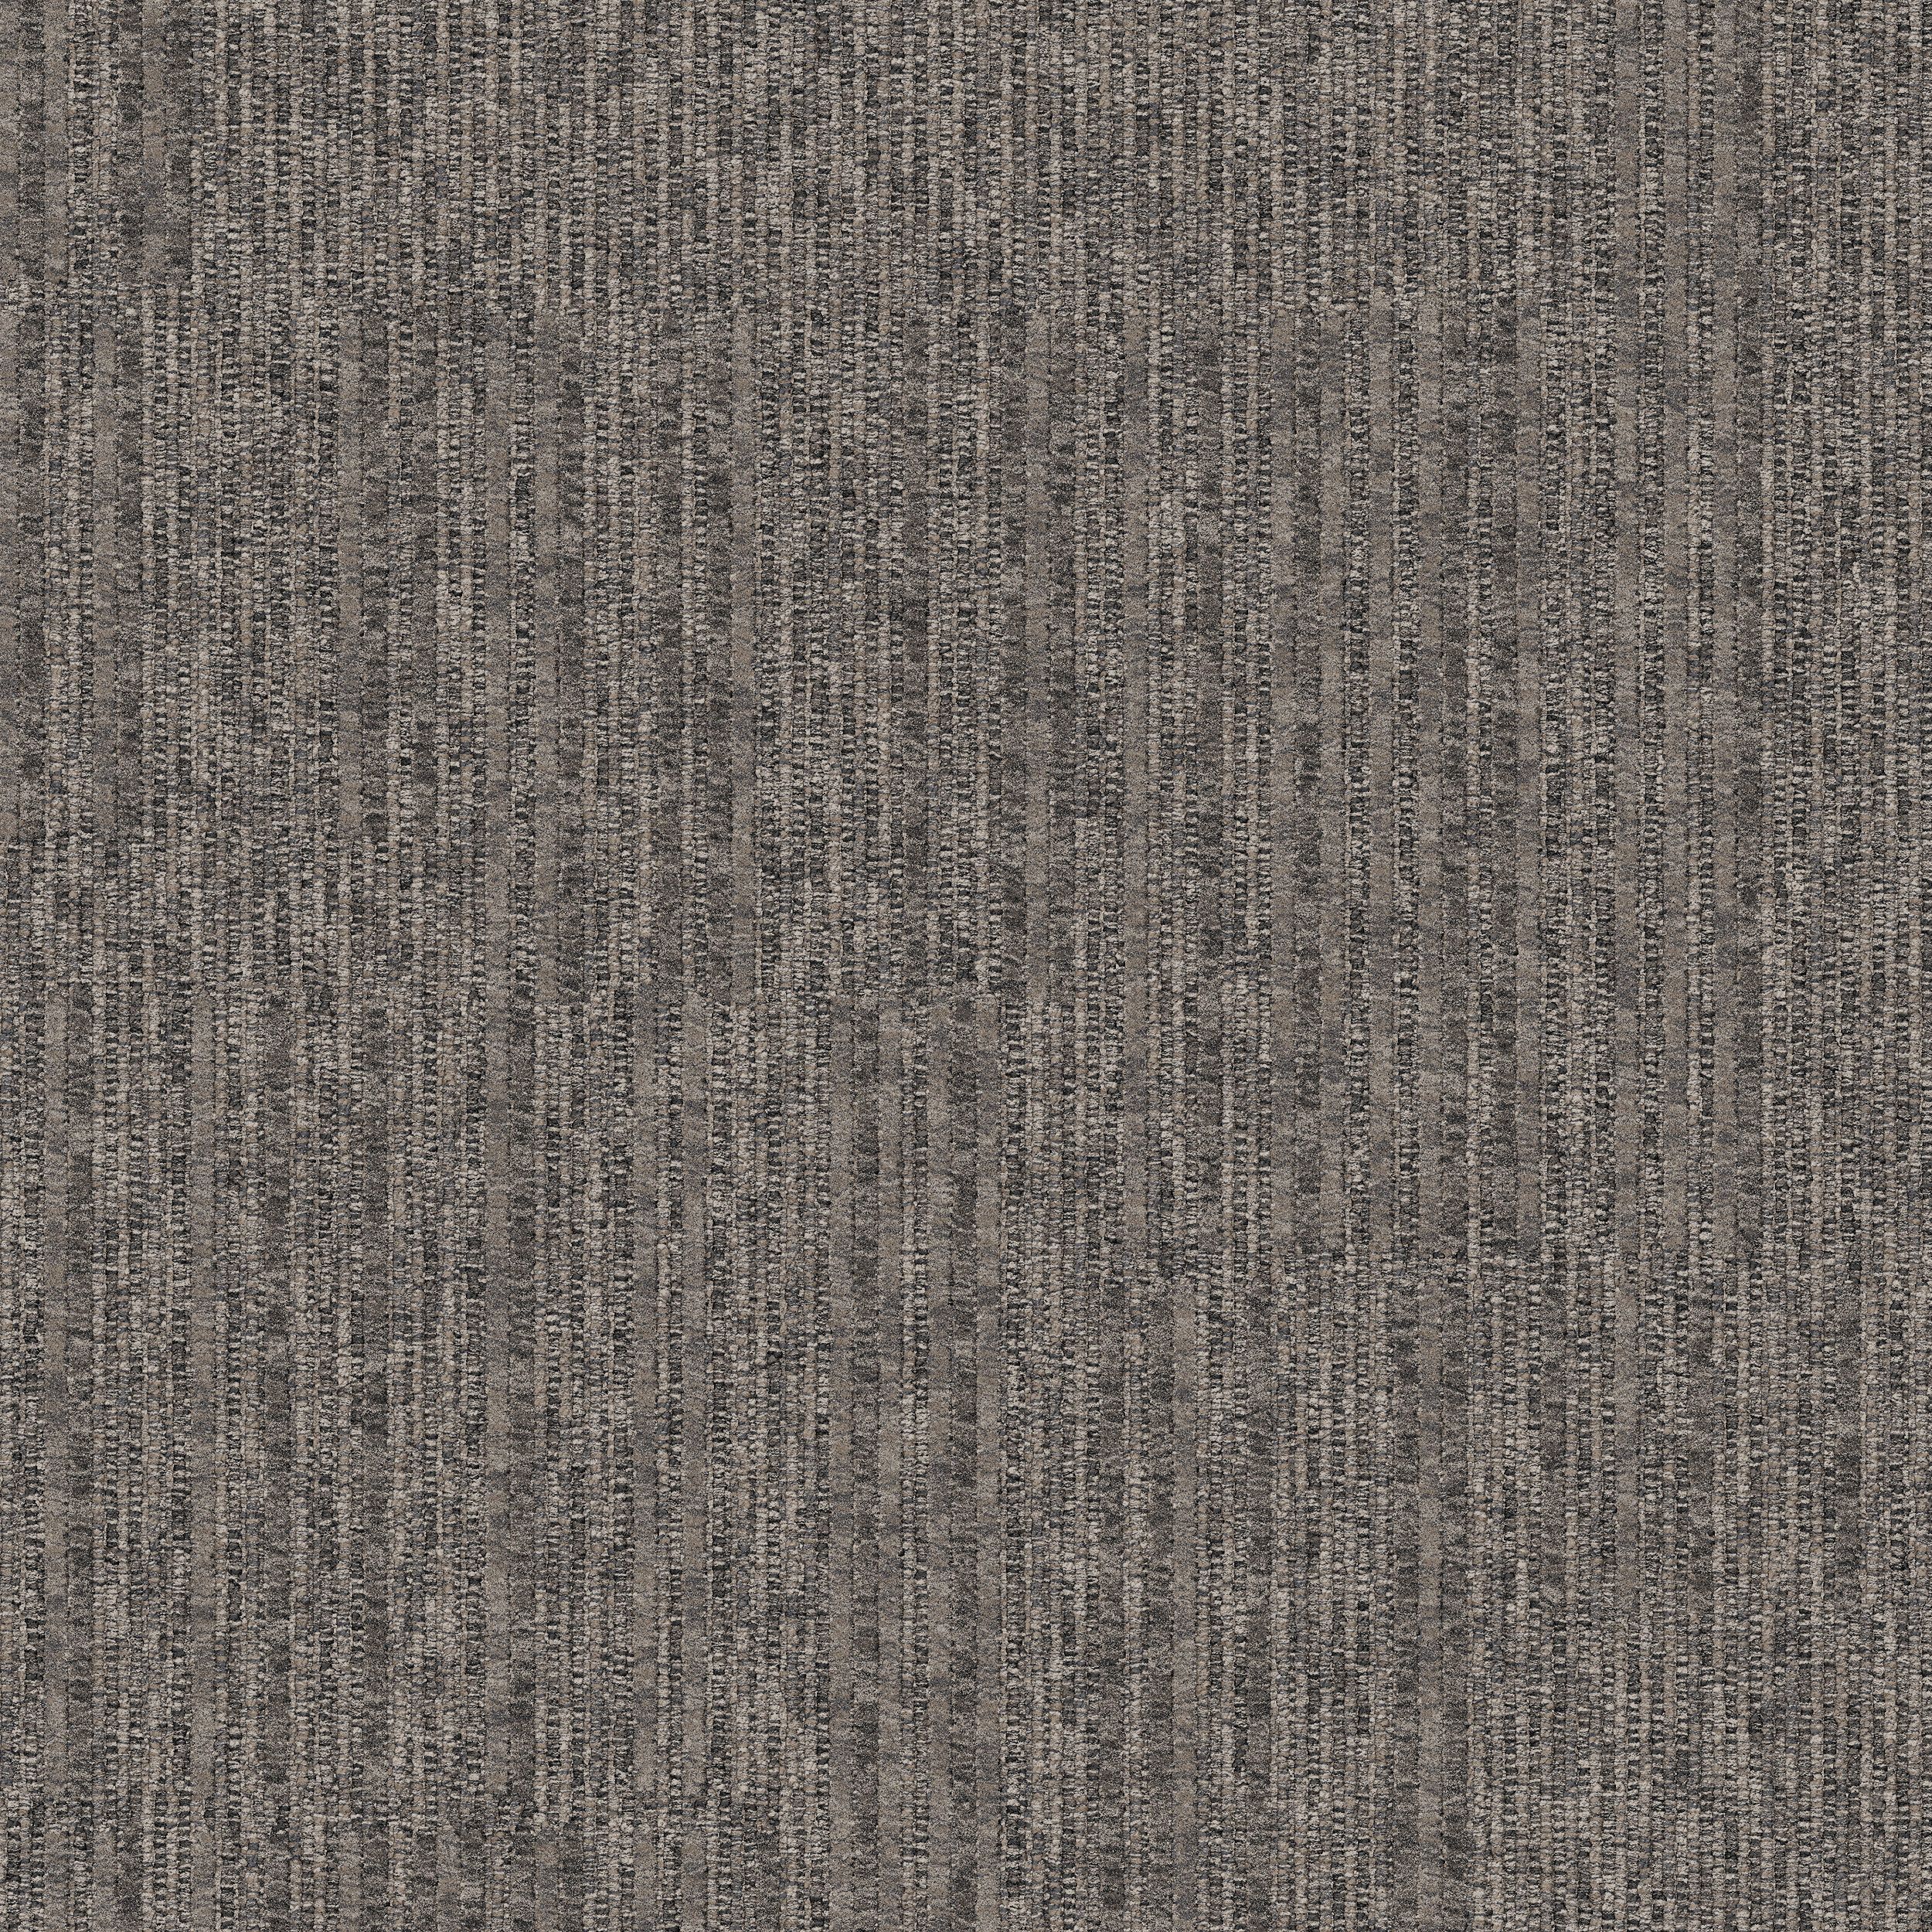 Equilibrium Carpet Tile In Persistence número de imagen 4